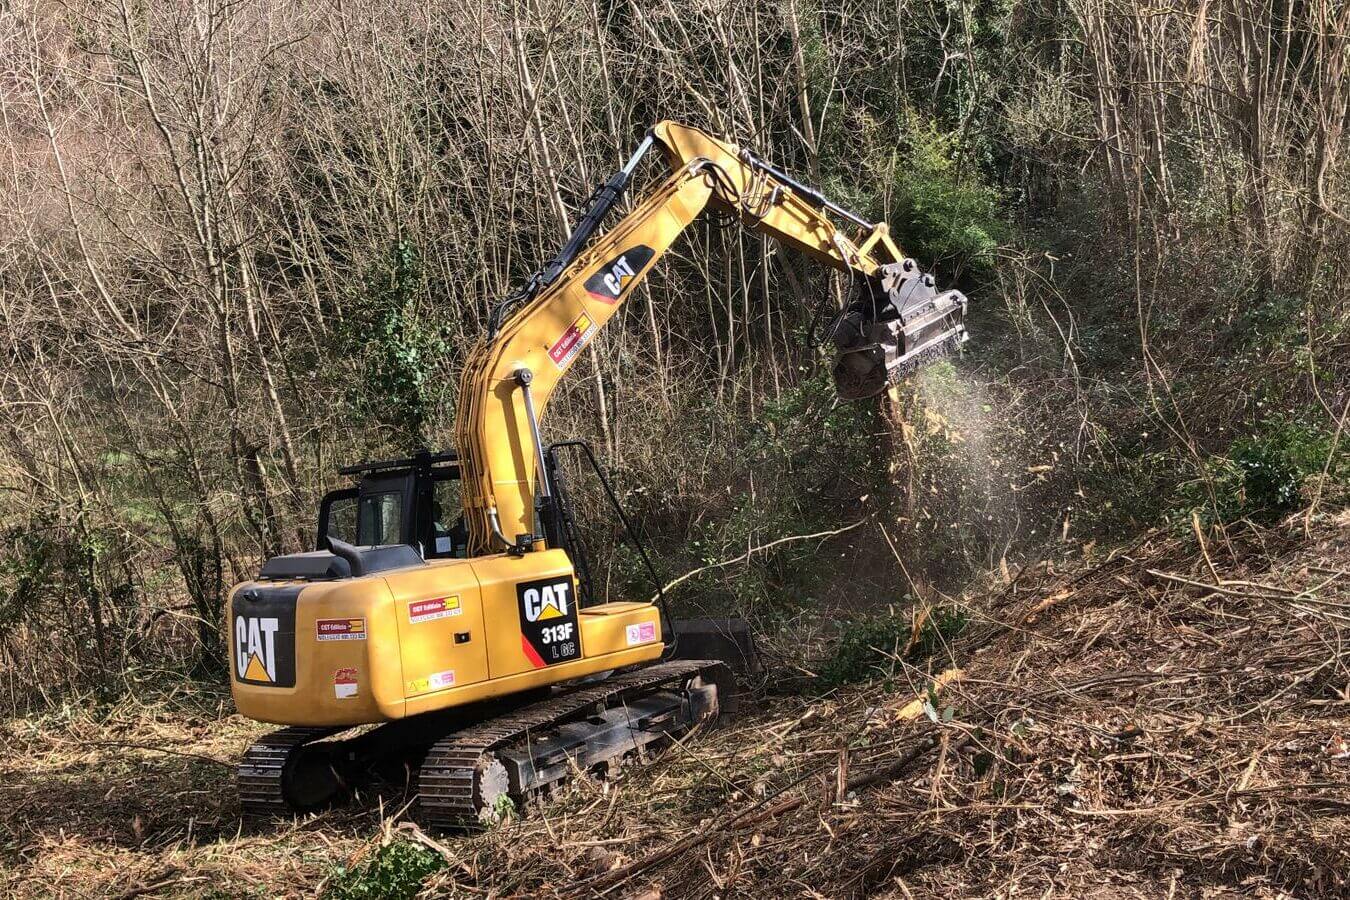 Escavatore caterpillar 313 a noleggio da CGTE con decespugliatore al lavoro in una bonifica in un bosco CGTE Noleggio